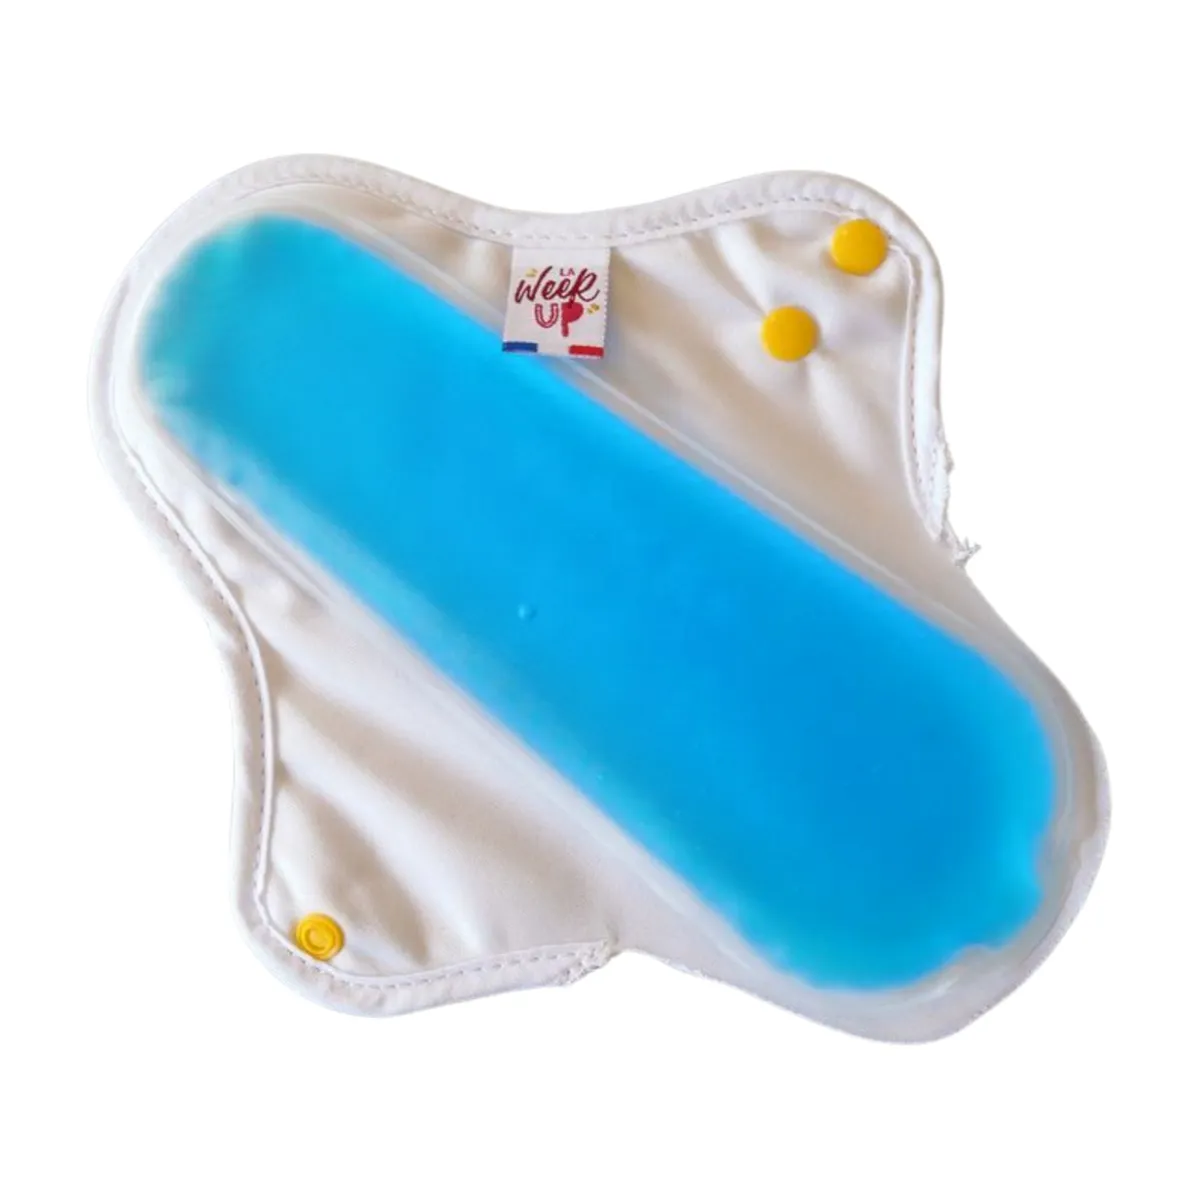 Serviette et poche de gel pour bains dérivatifs & cryothérapie périnéale -  La Week'Up